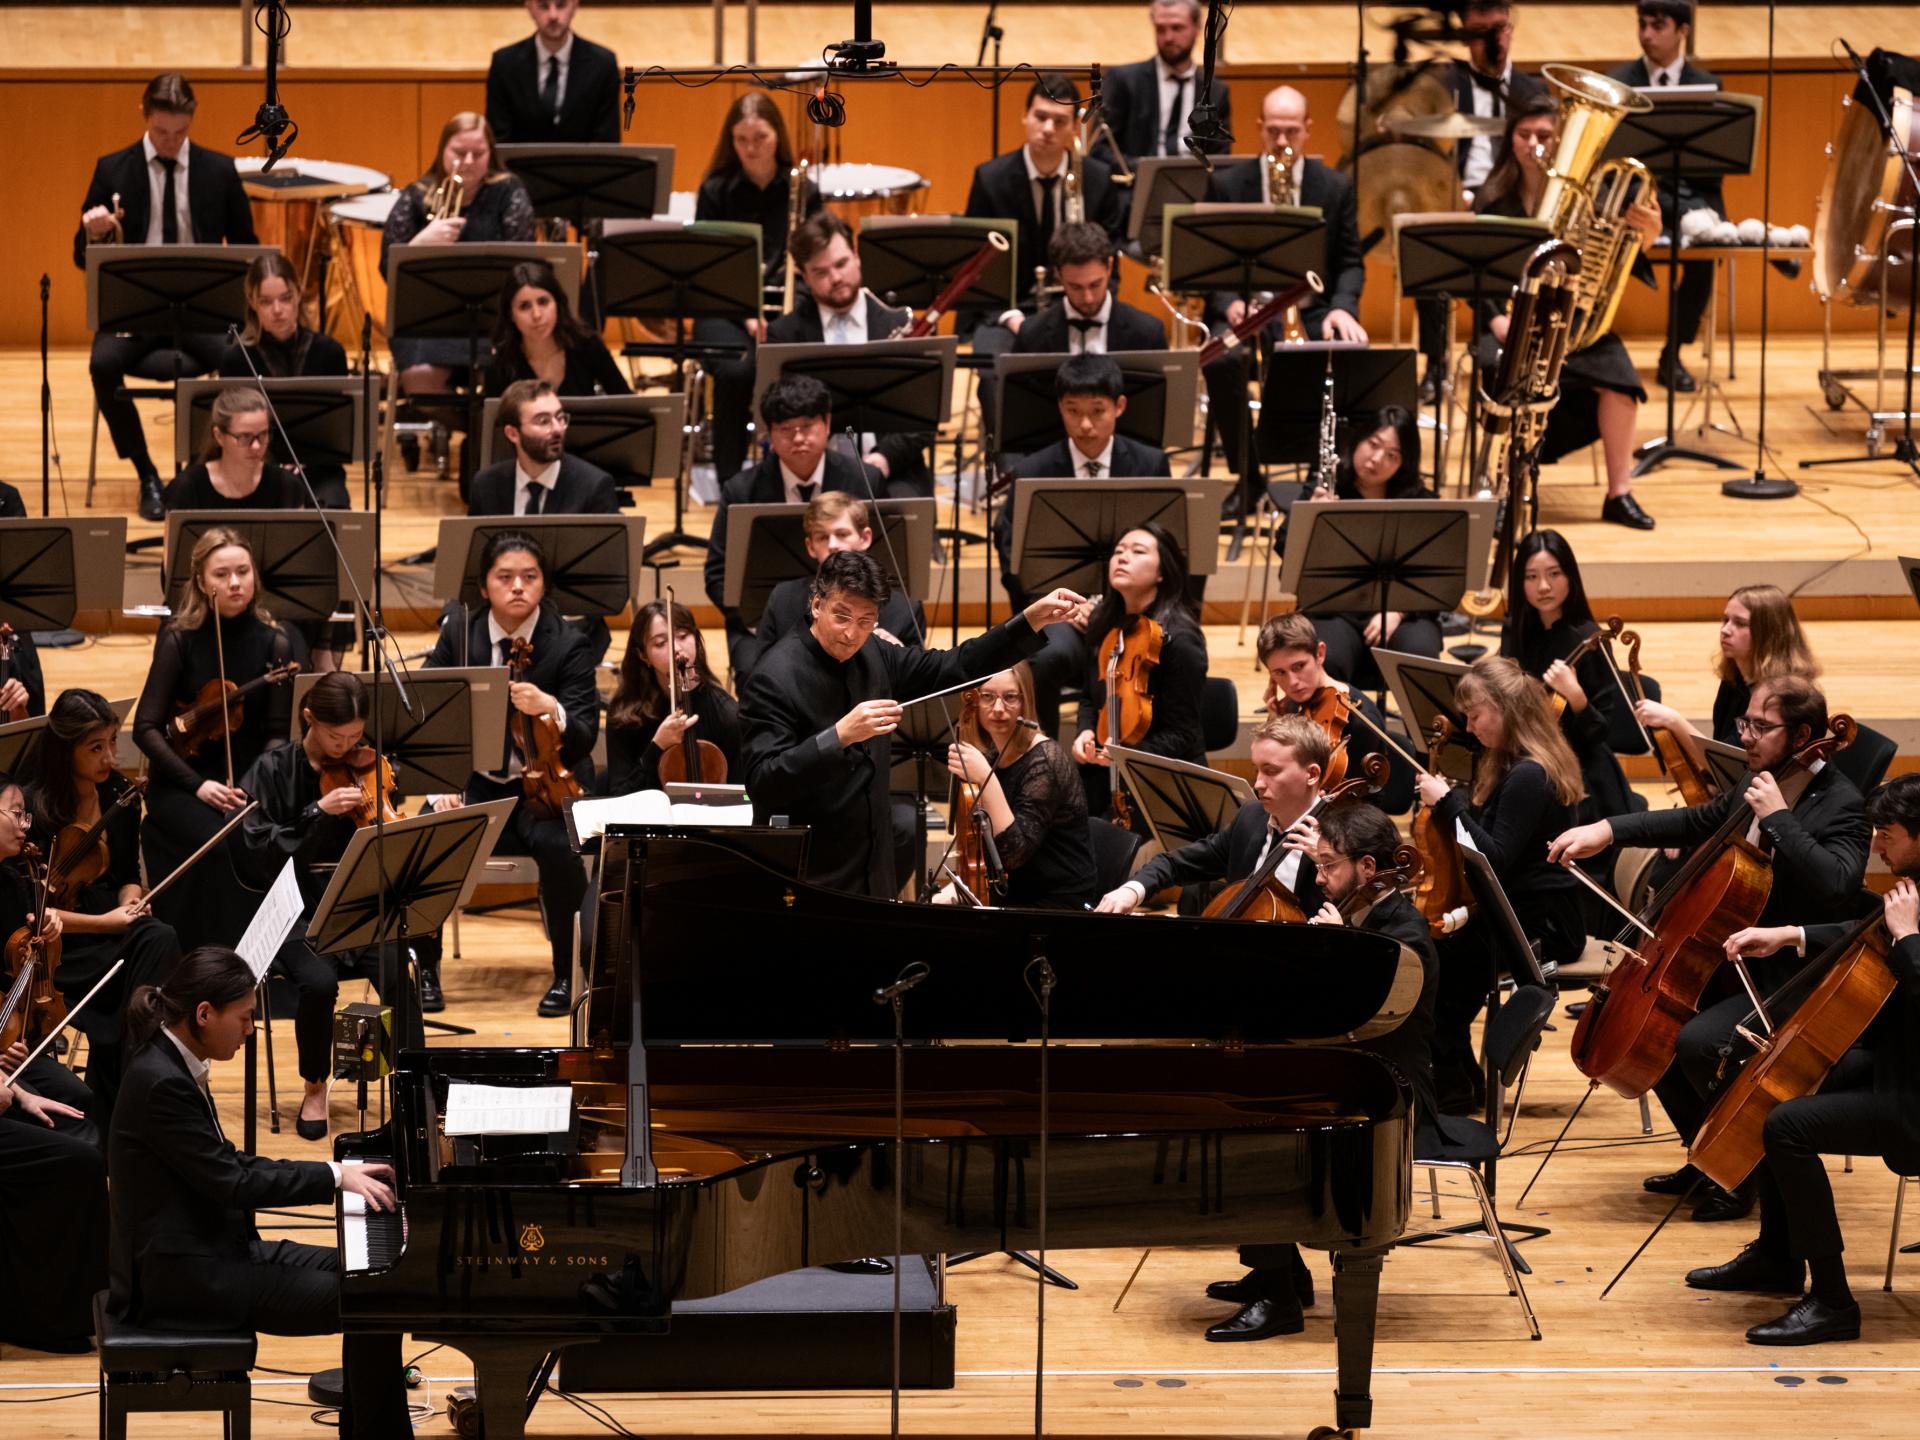 Zu sehen ist das HfMDK Symphonieorchester mit einem Solisten am Flügel.